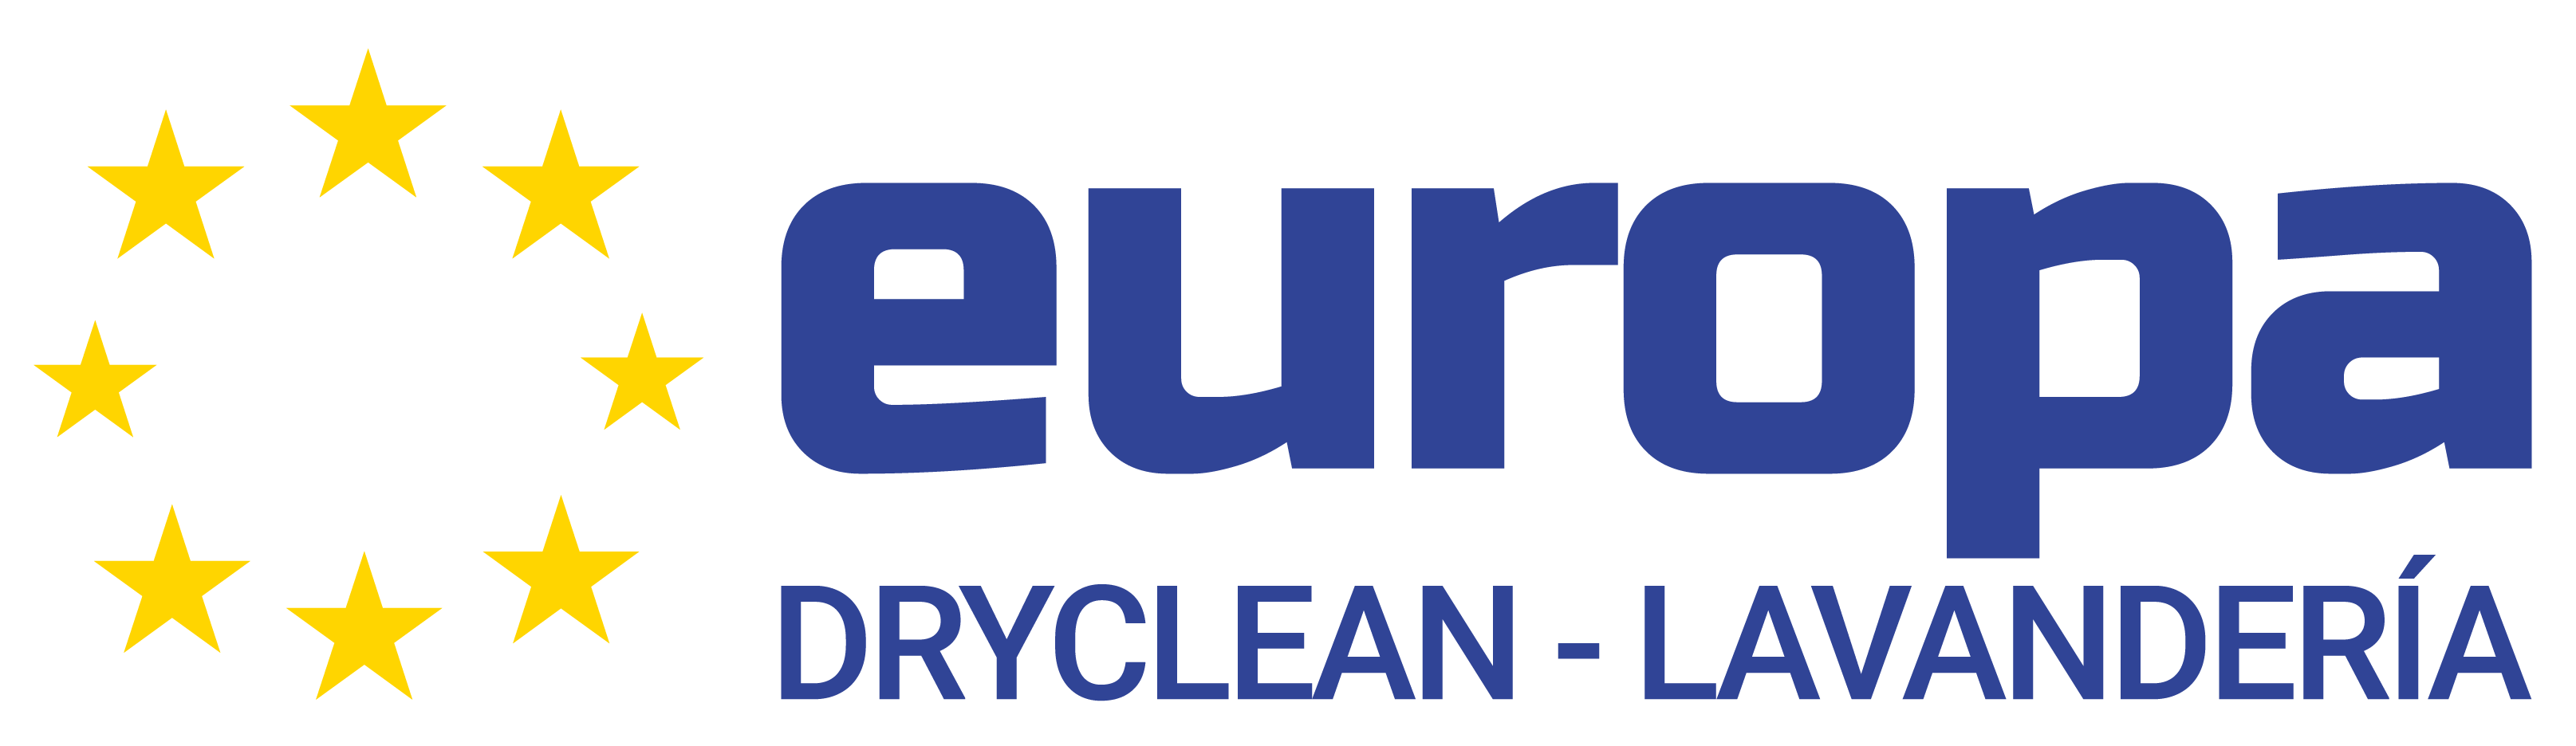 Lavandería DryClean Europa